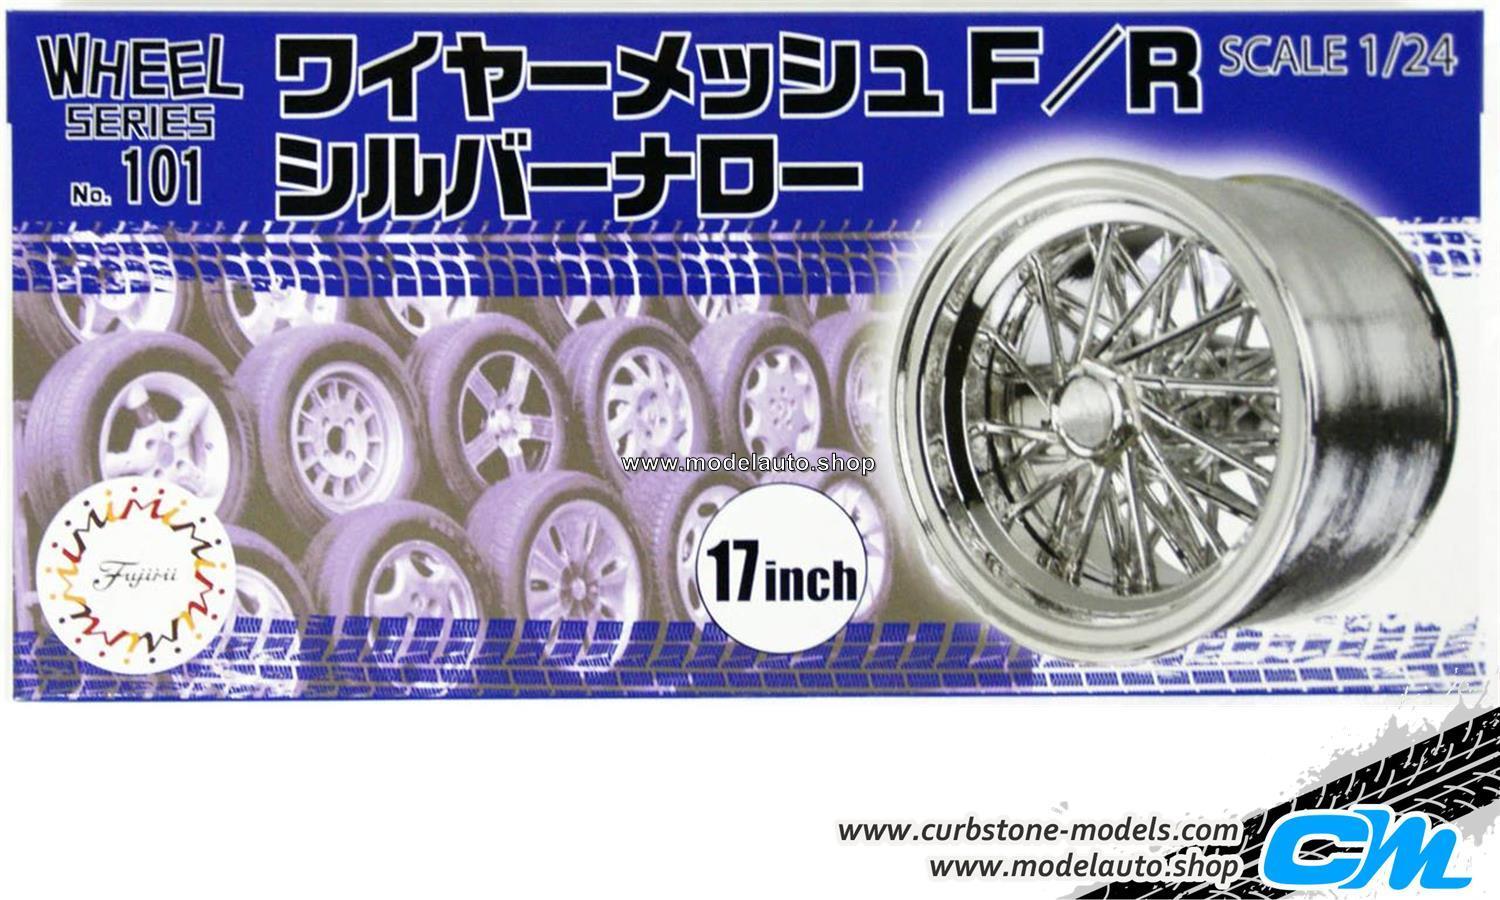 Fujimi TW53 Wire Wheel Silver Type Wheel & Tire Set 17 inch 1/24 Scale Kit 